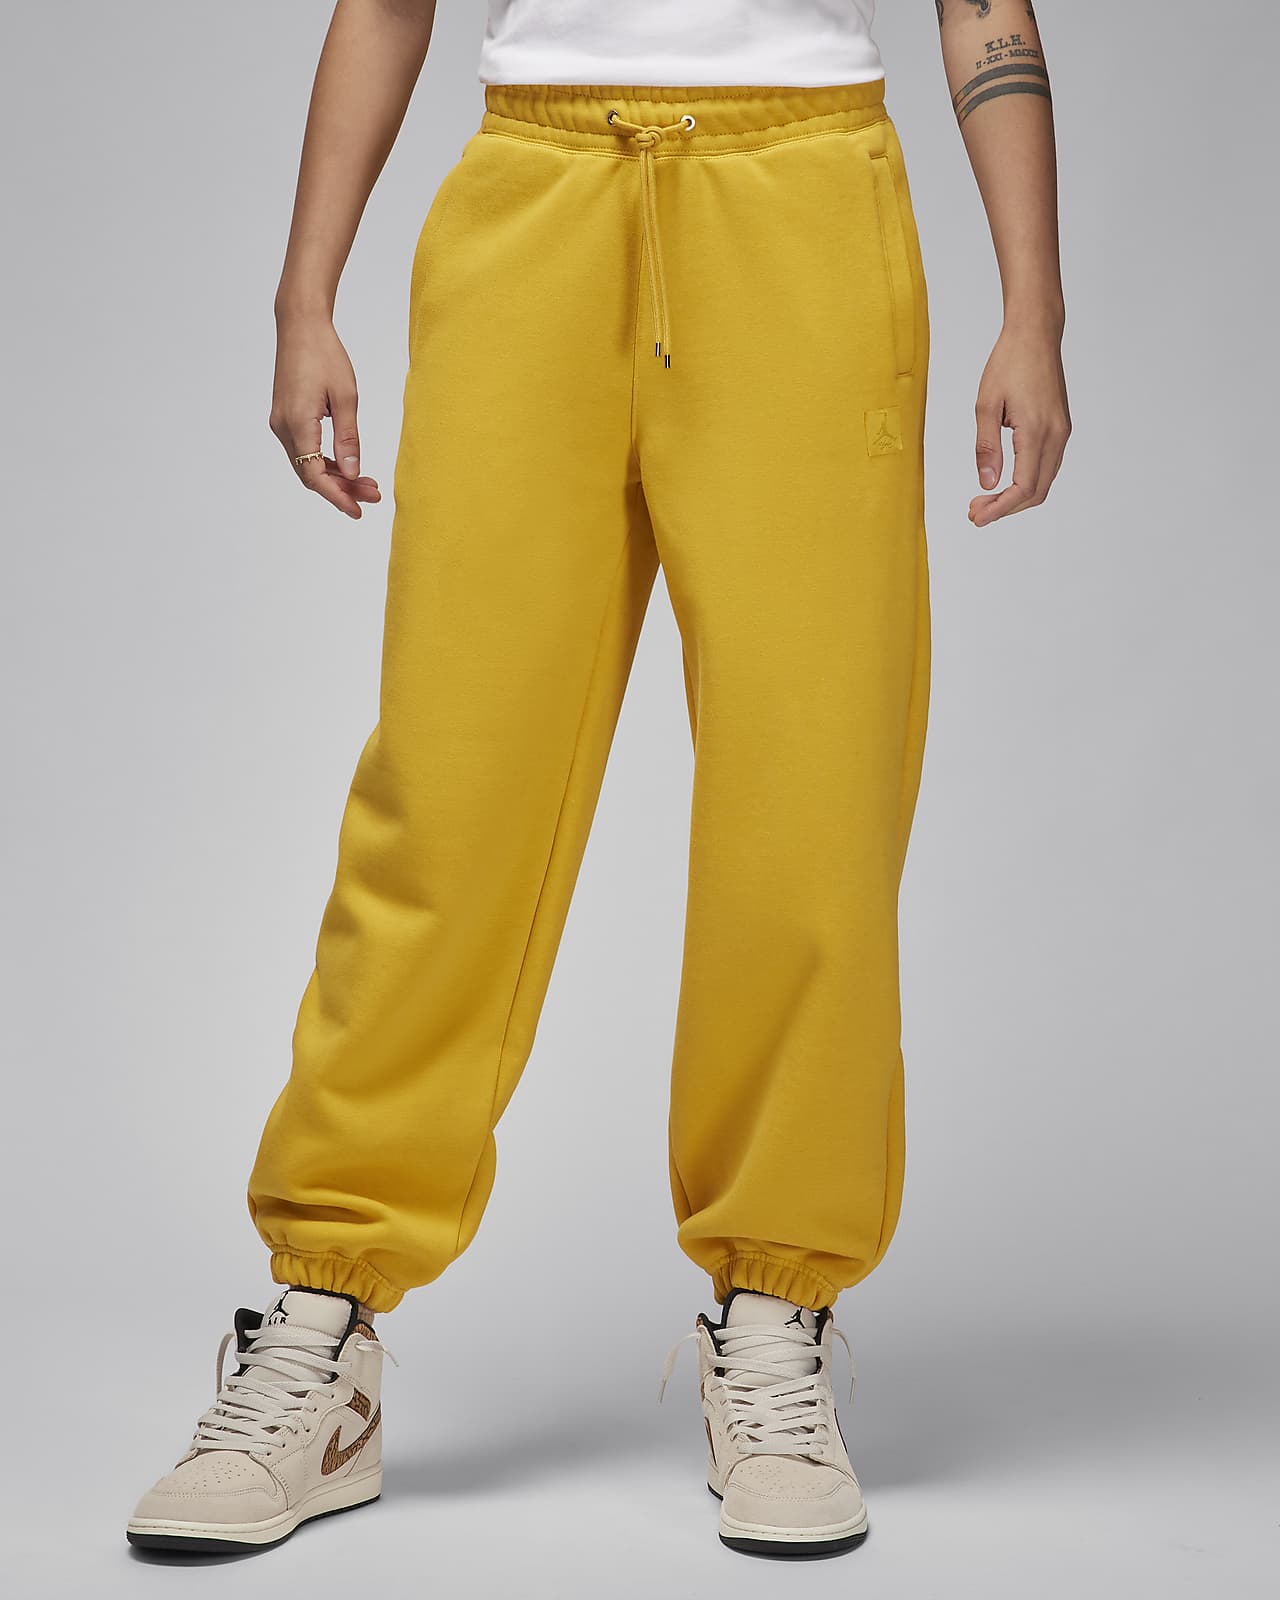 Pants para mujer Jordan Flight Fleece. Nike MX